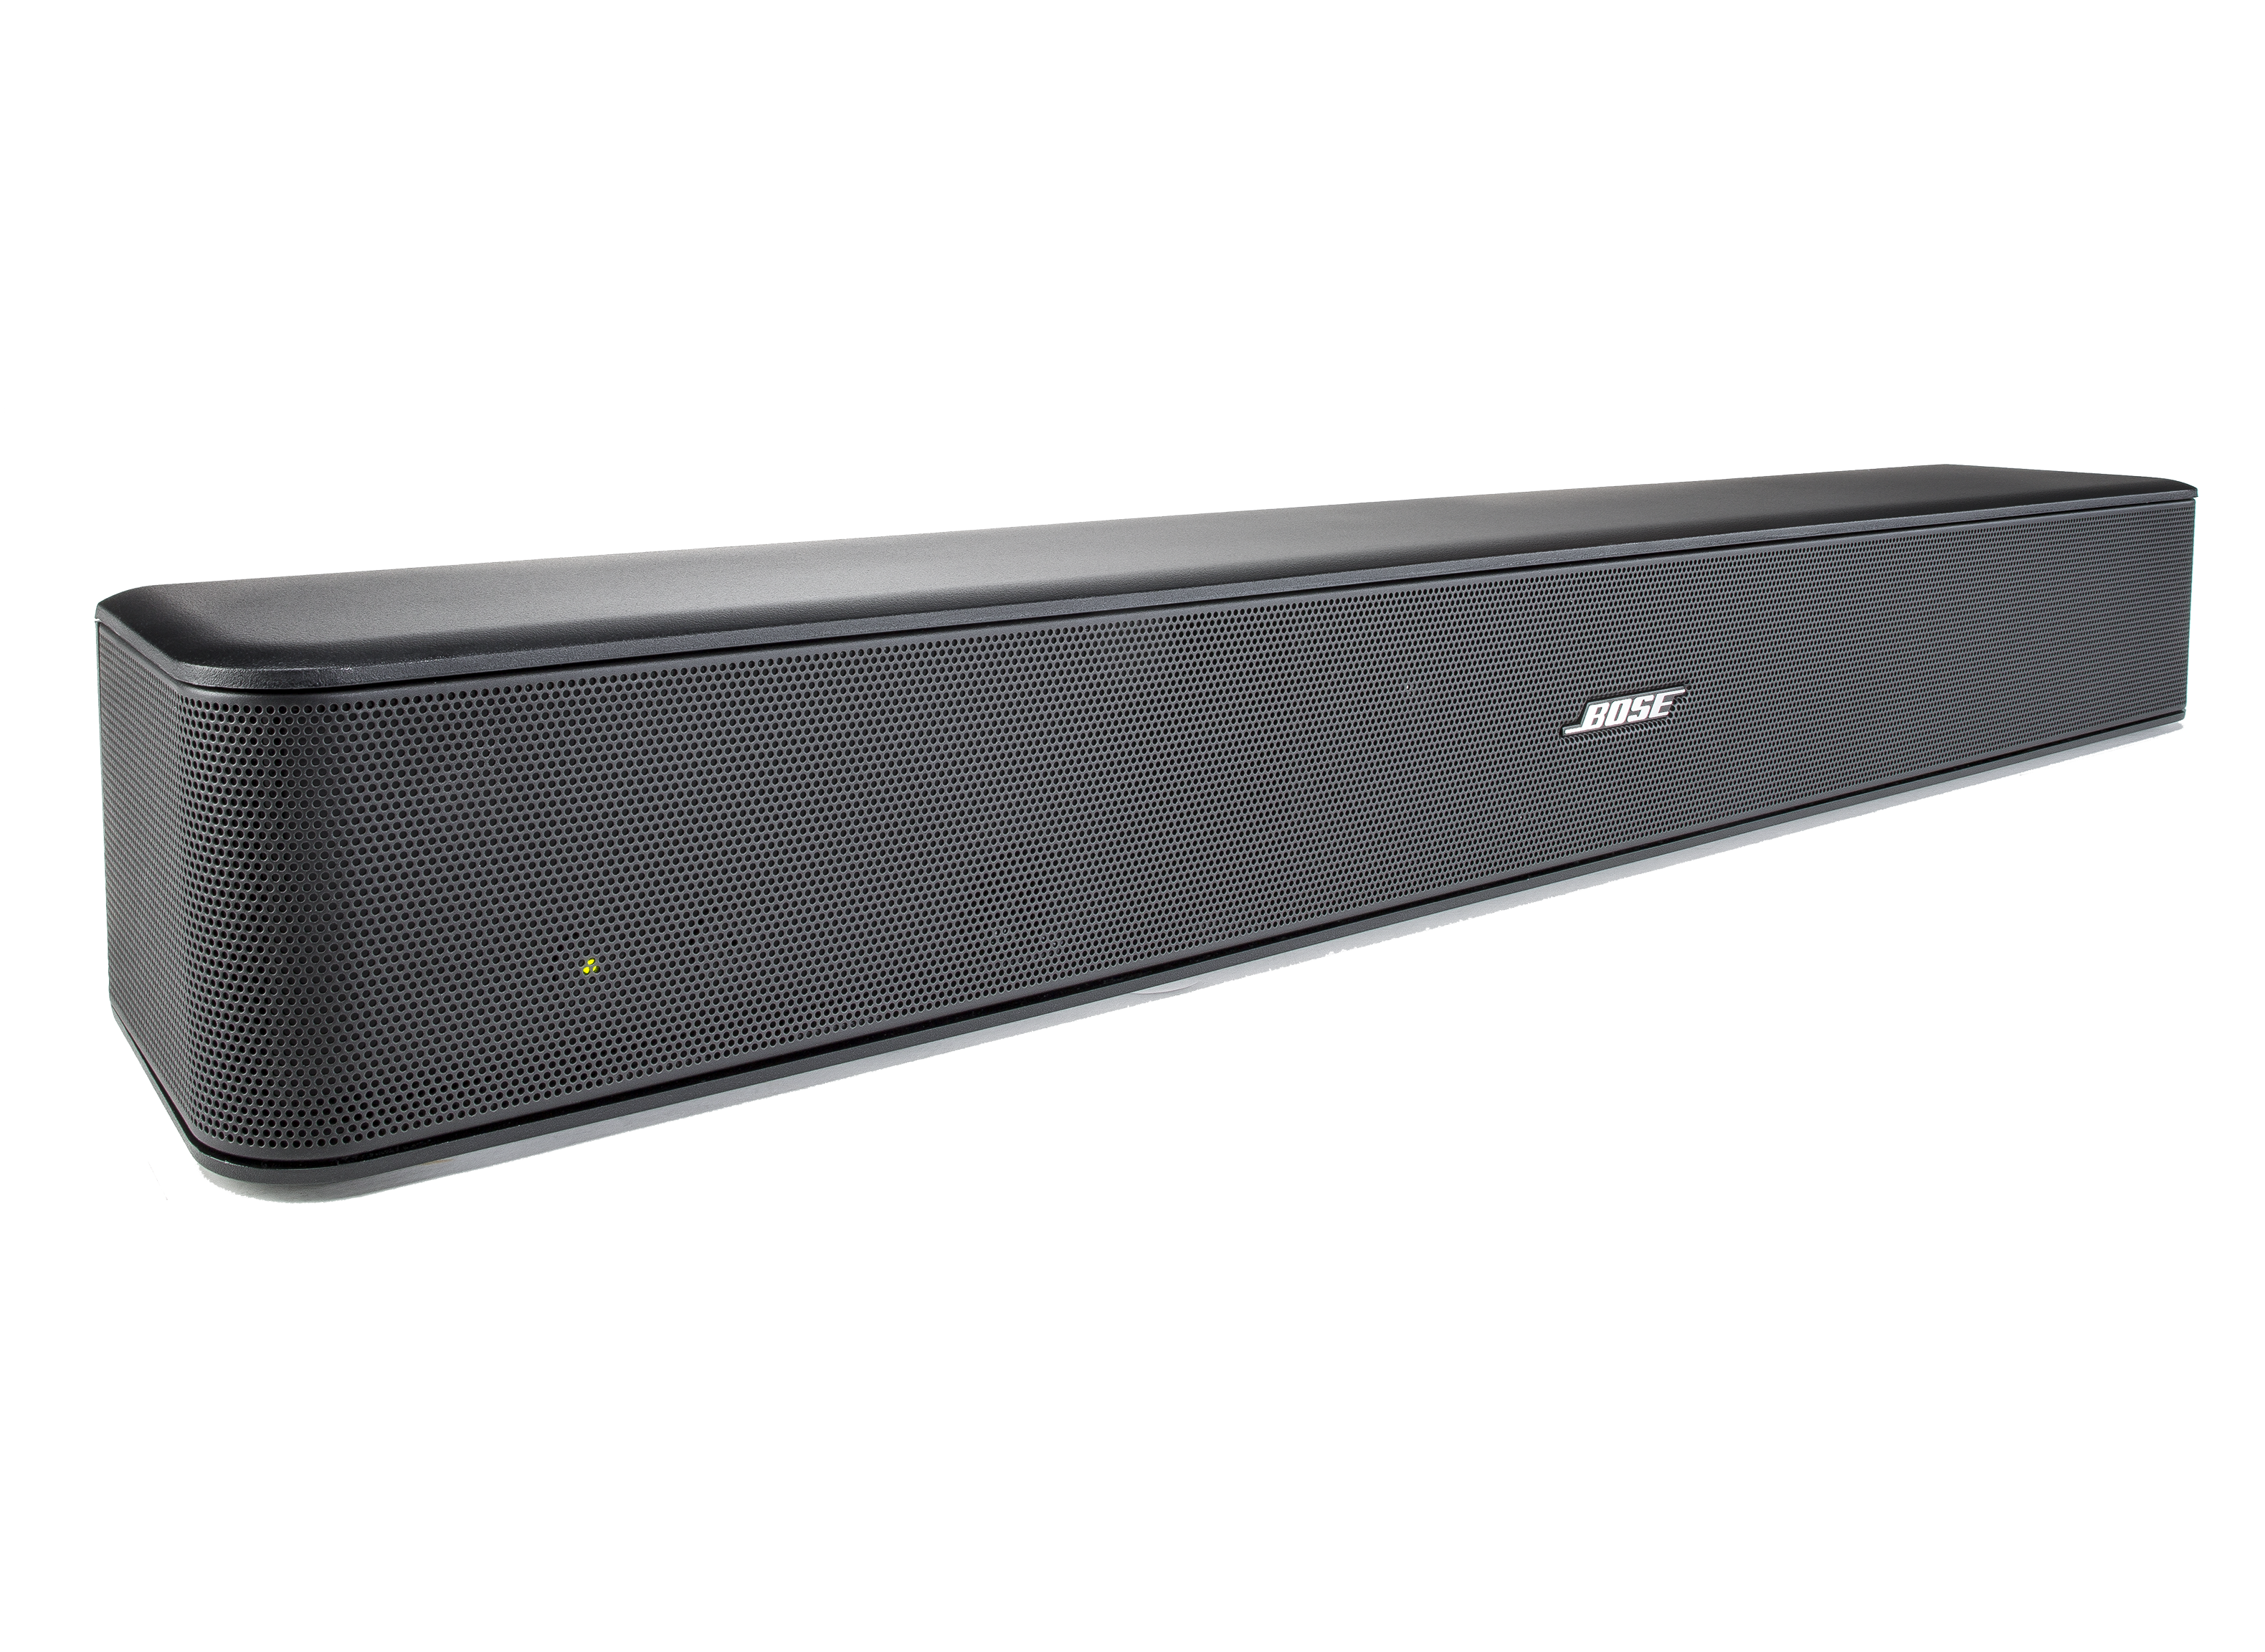 Bose Solo 5 TV Sound System Soundbar - Consumer Reports